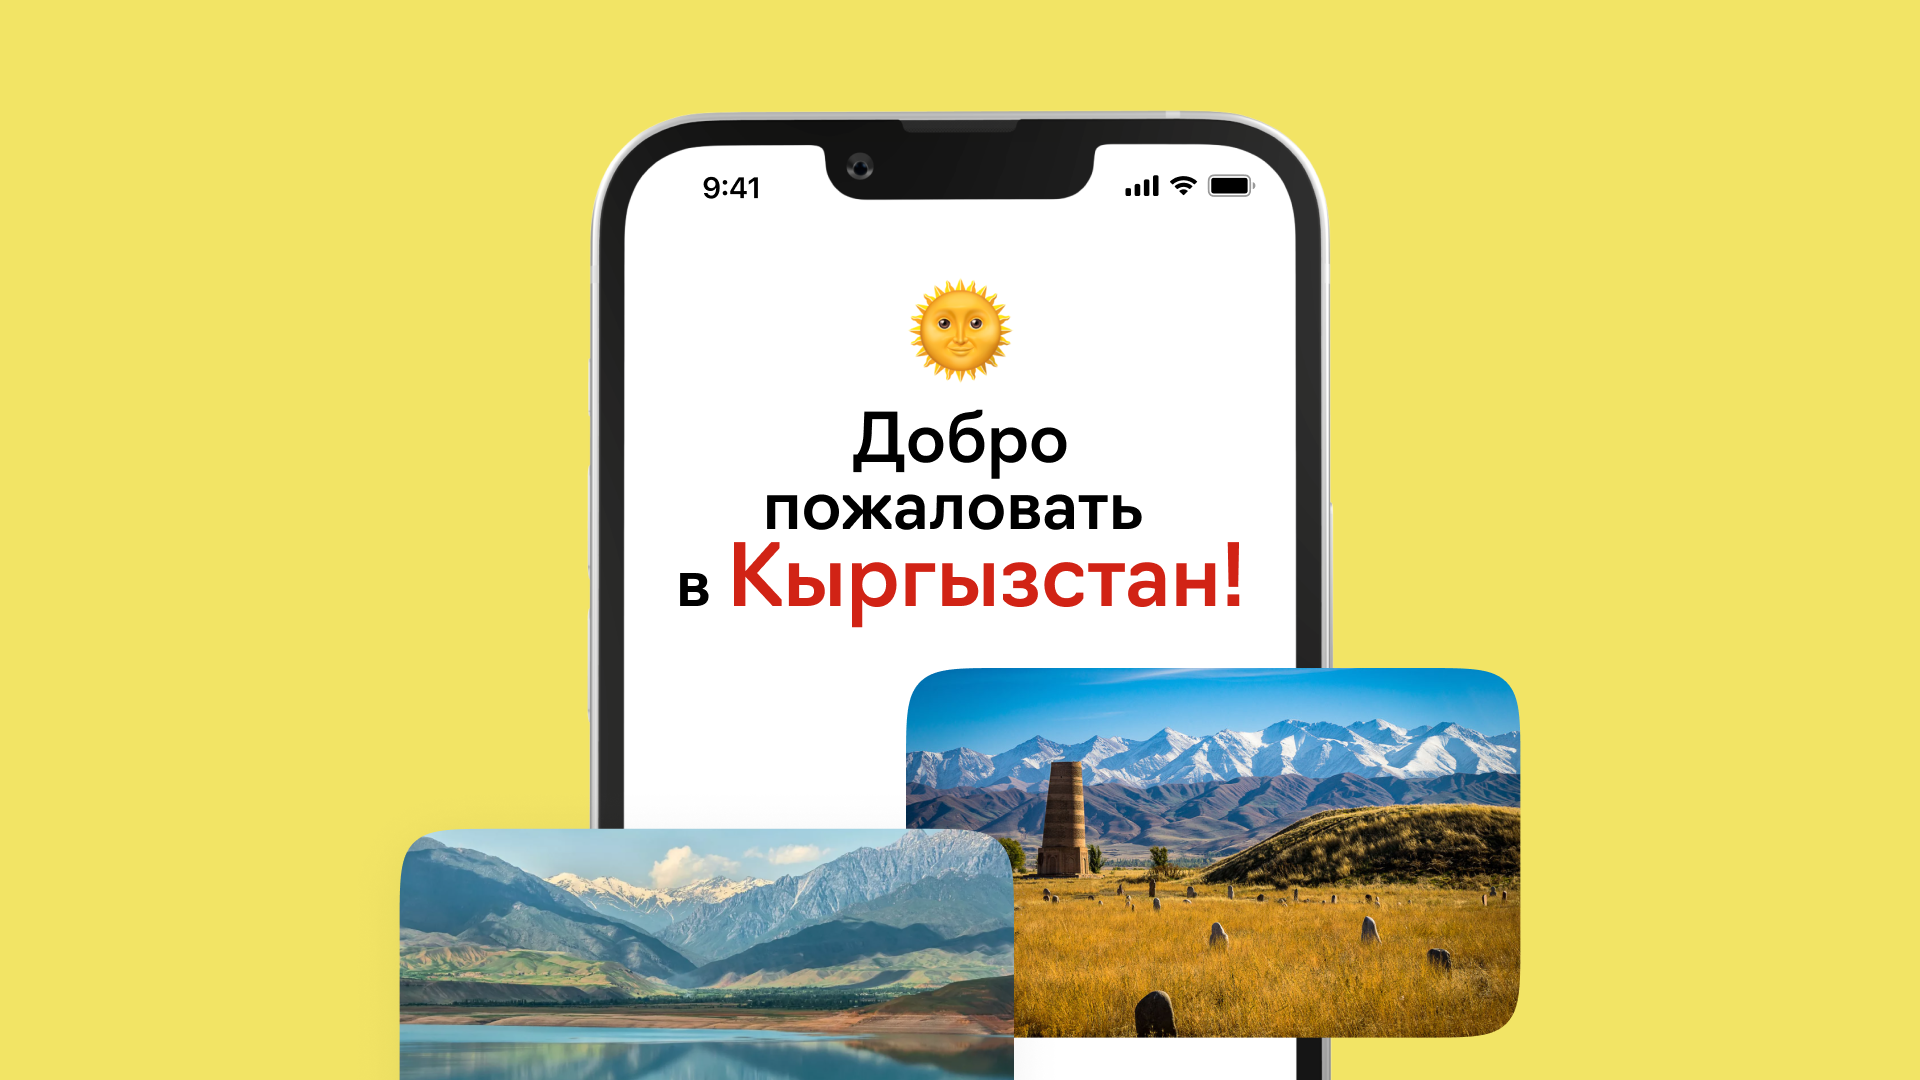 Разработка и поддержка мобильных приложений для бизнеса в Кыргызстане, фотография 1